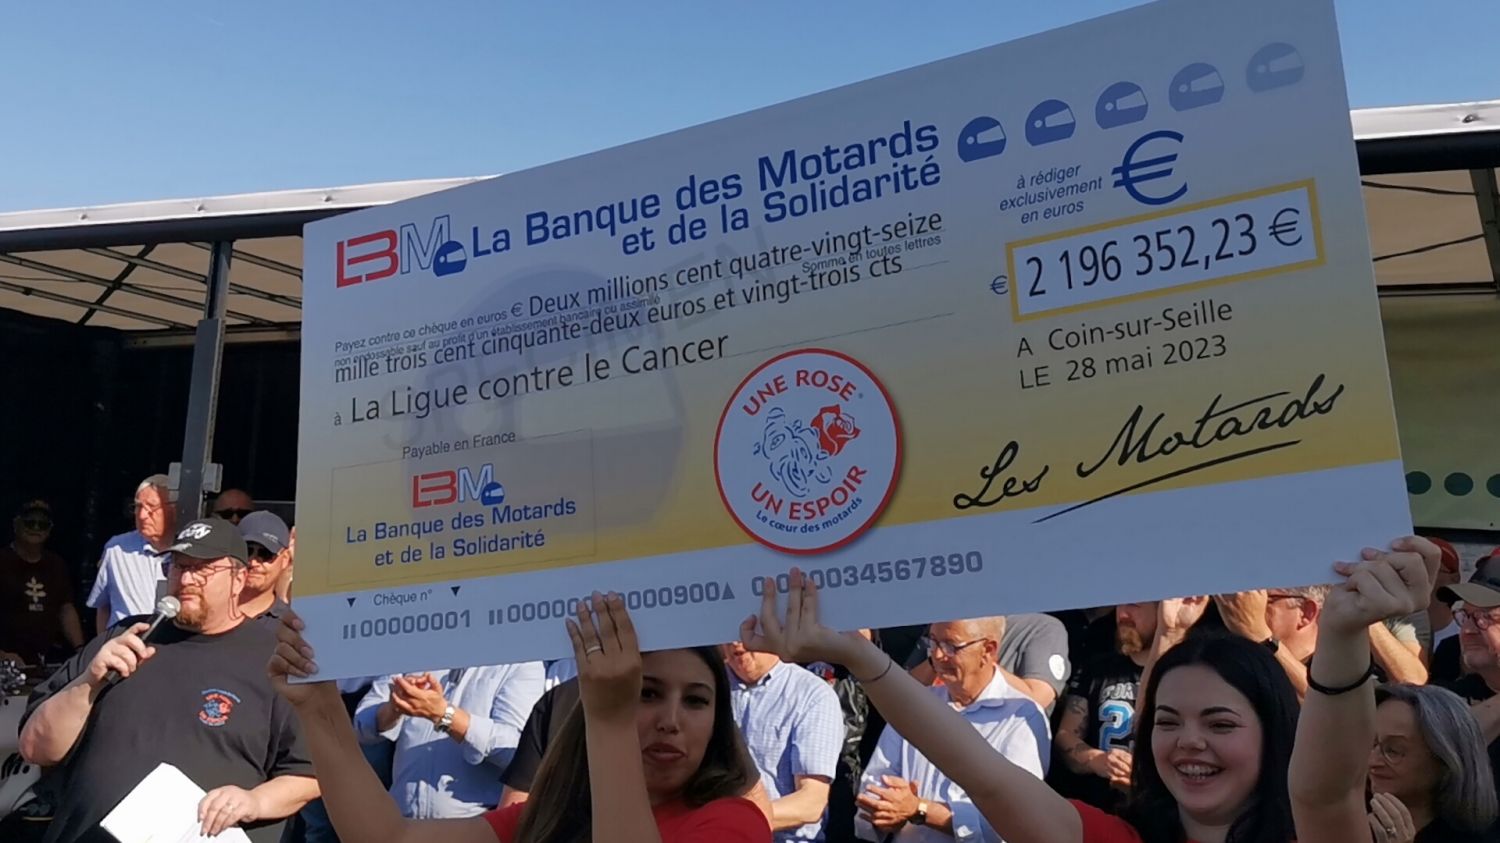 Un million d'euros pour la Ligue contre le cancer de Moselle grâce à l'opération ''Une Rose Un Espoir''